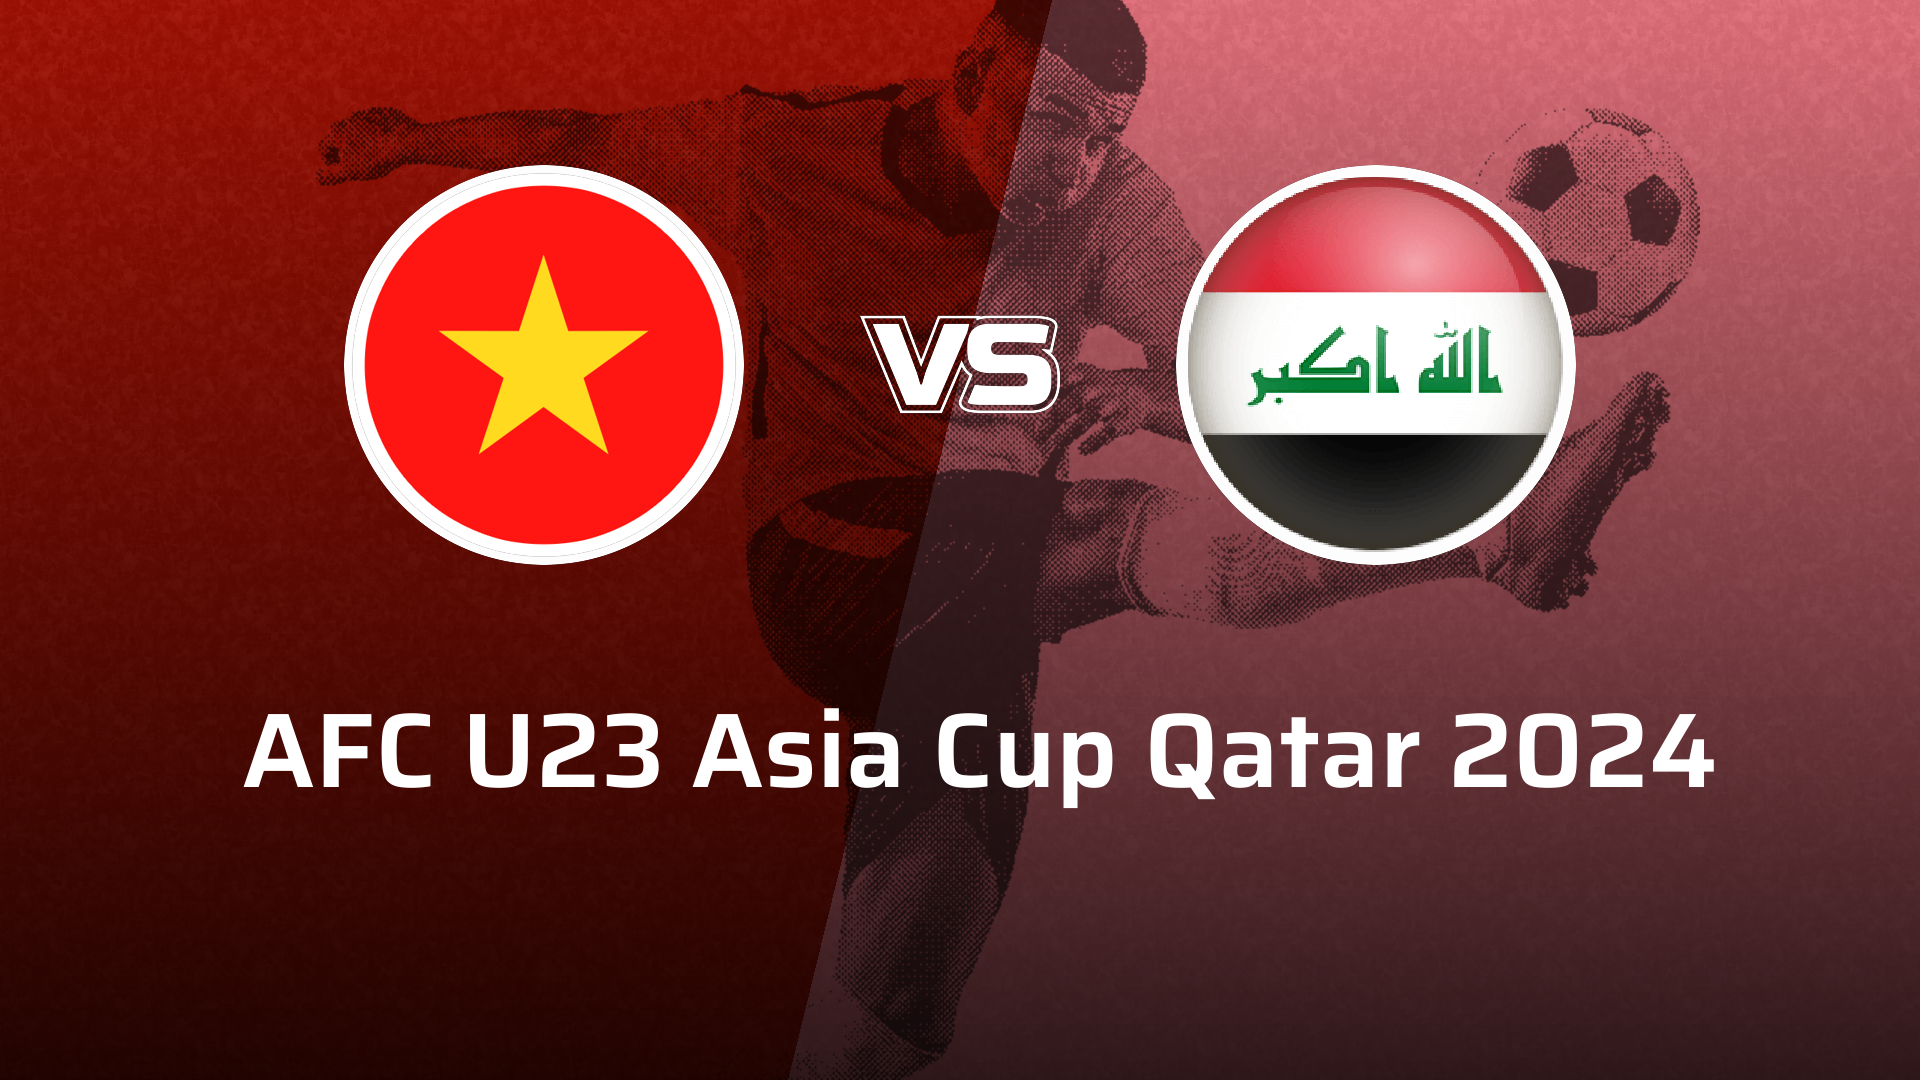 Iraq U23 VS Vietnam U23